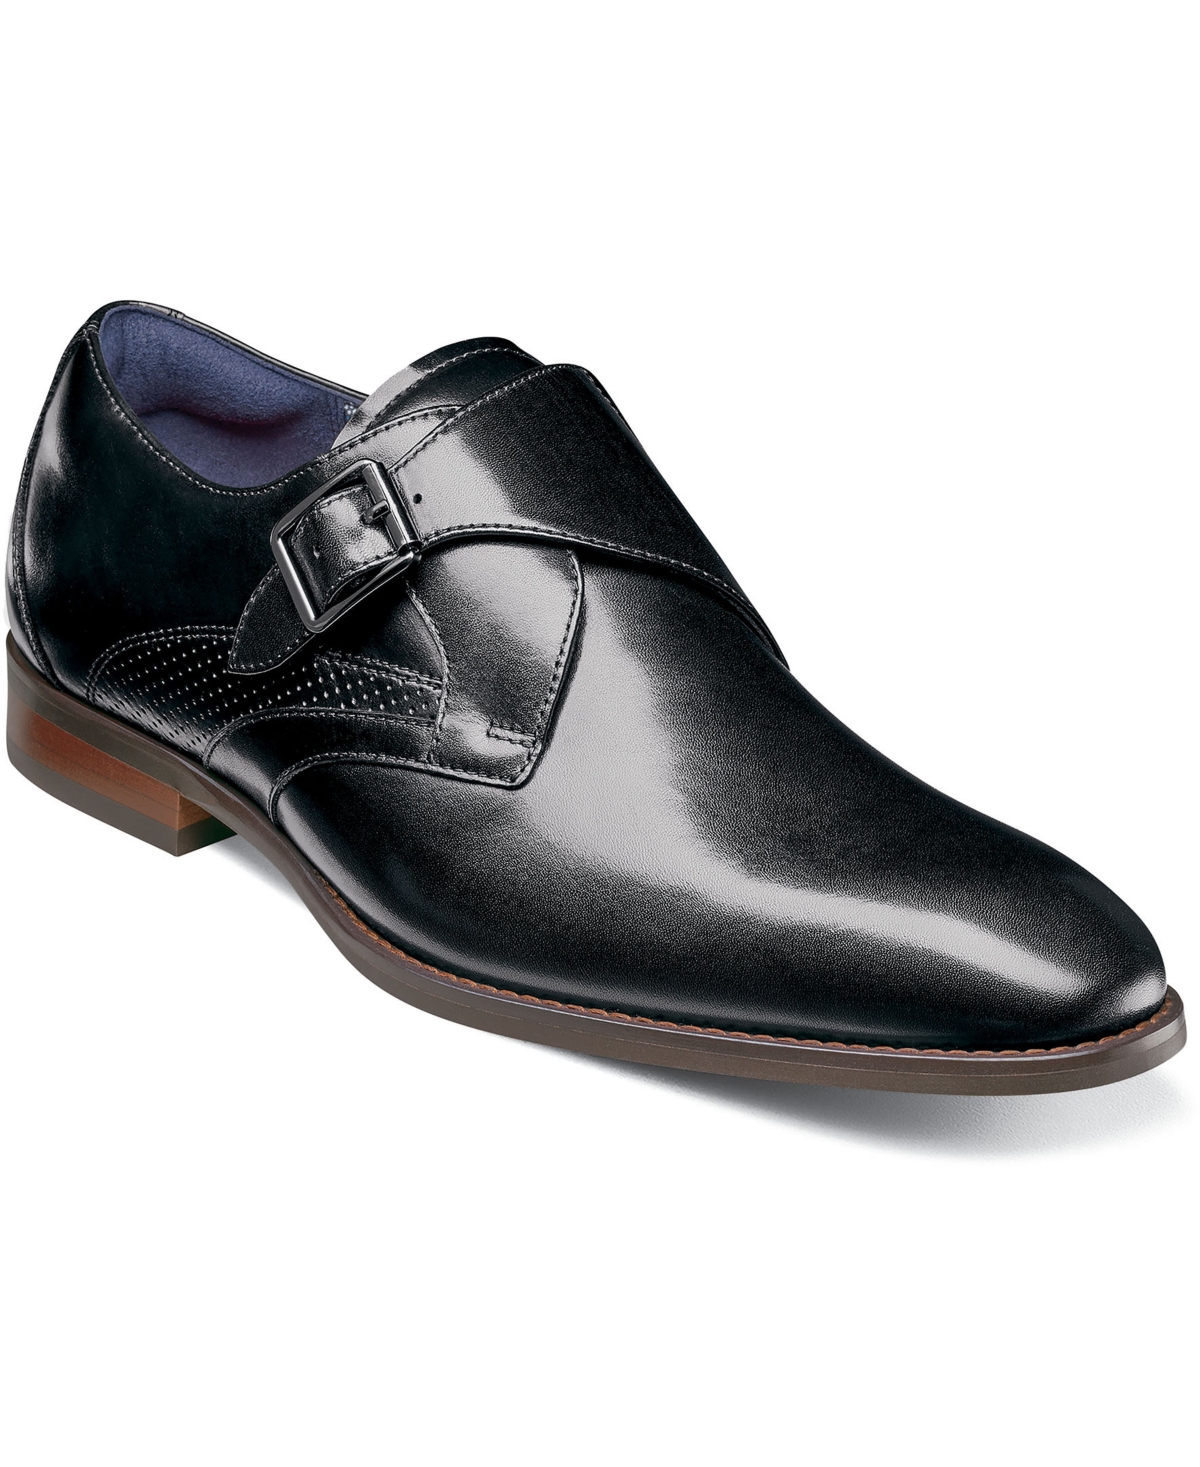 Men's Karcher Plain Toe Monk Strap Slip-On Dress Shoes - Cognac